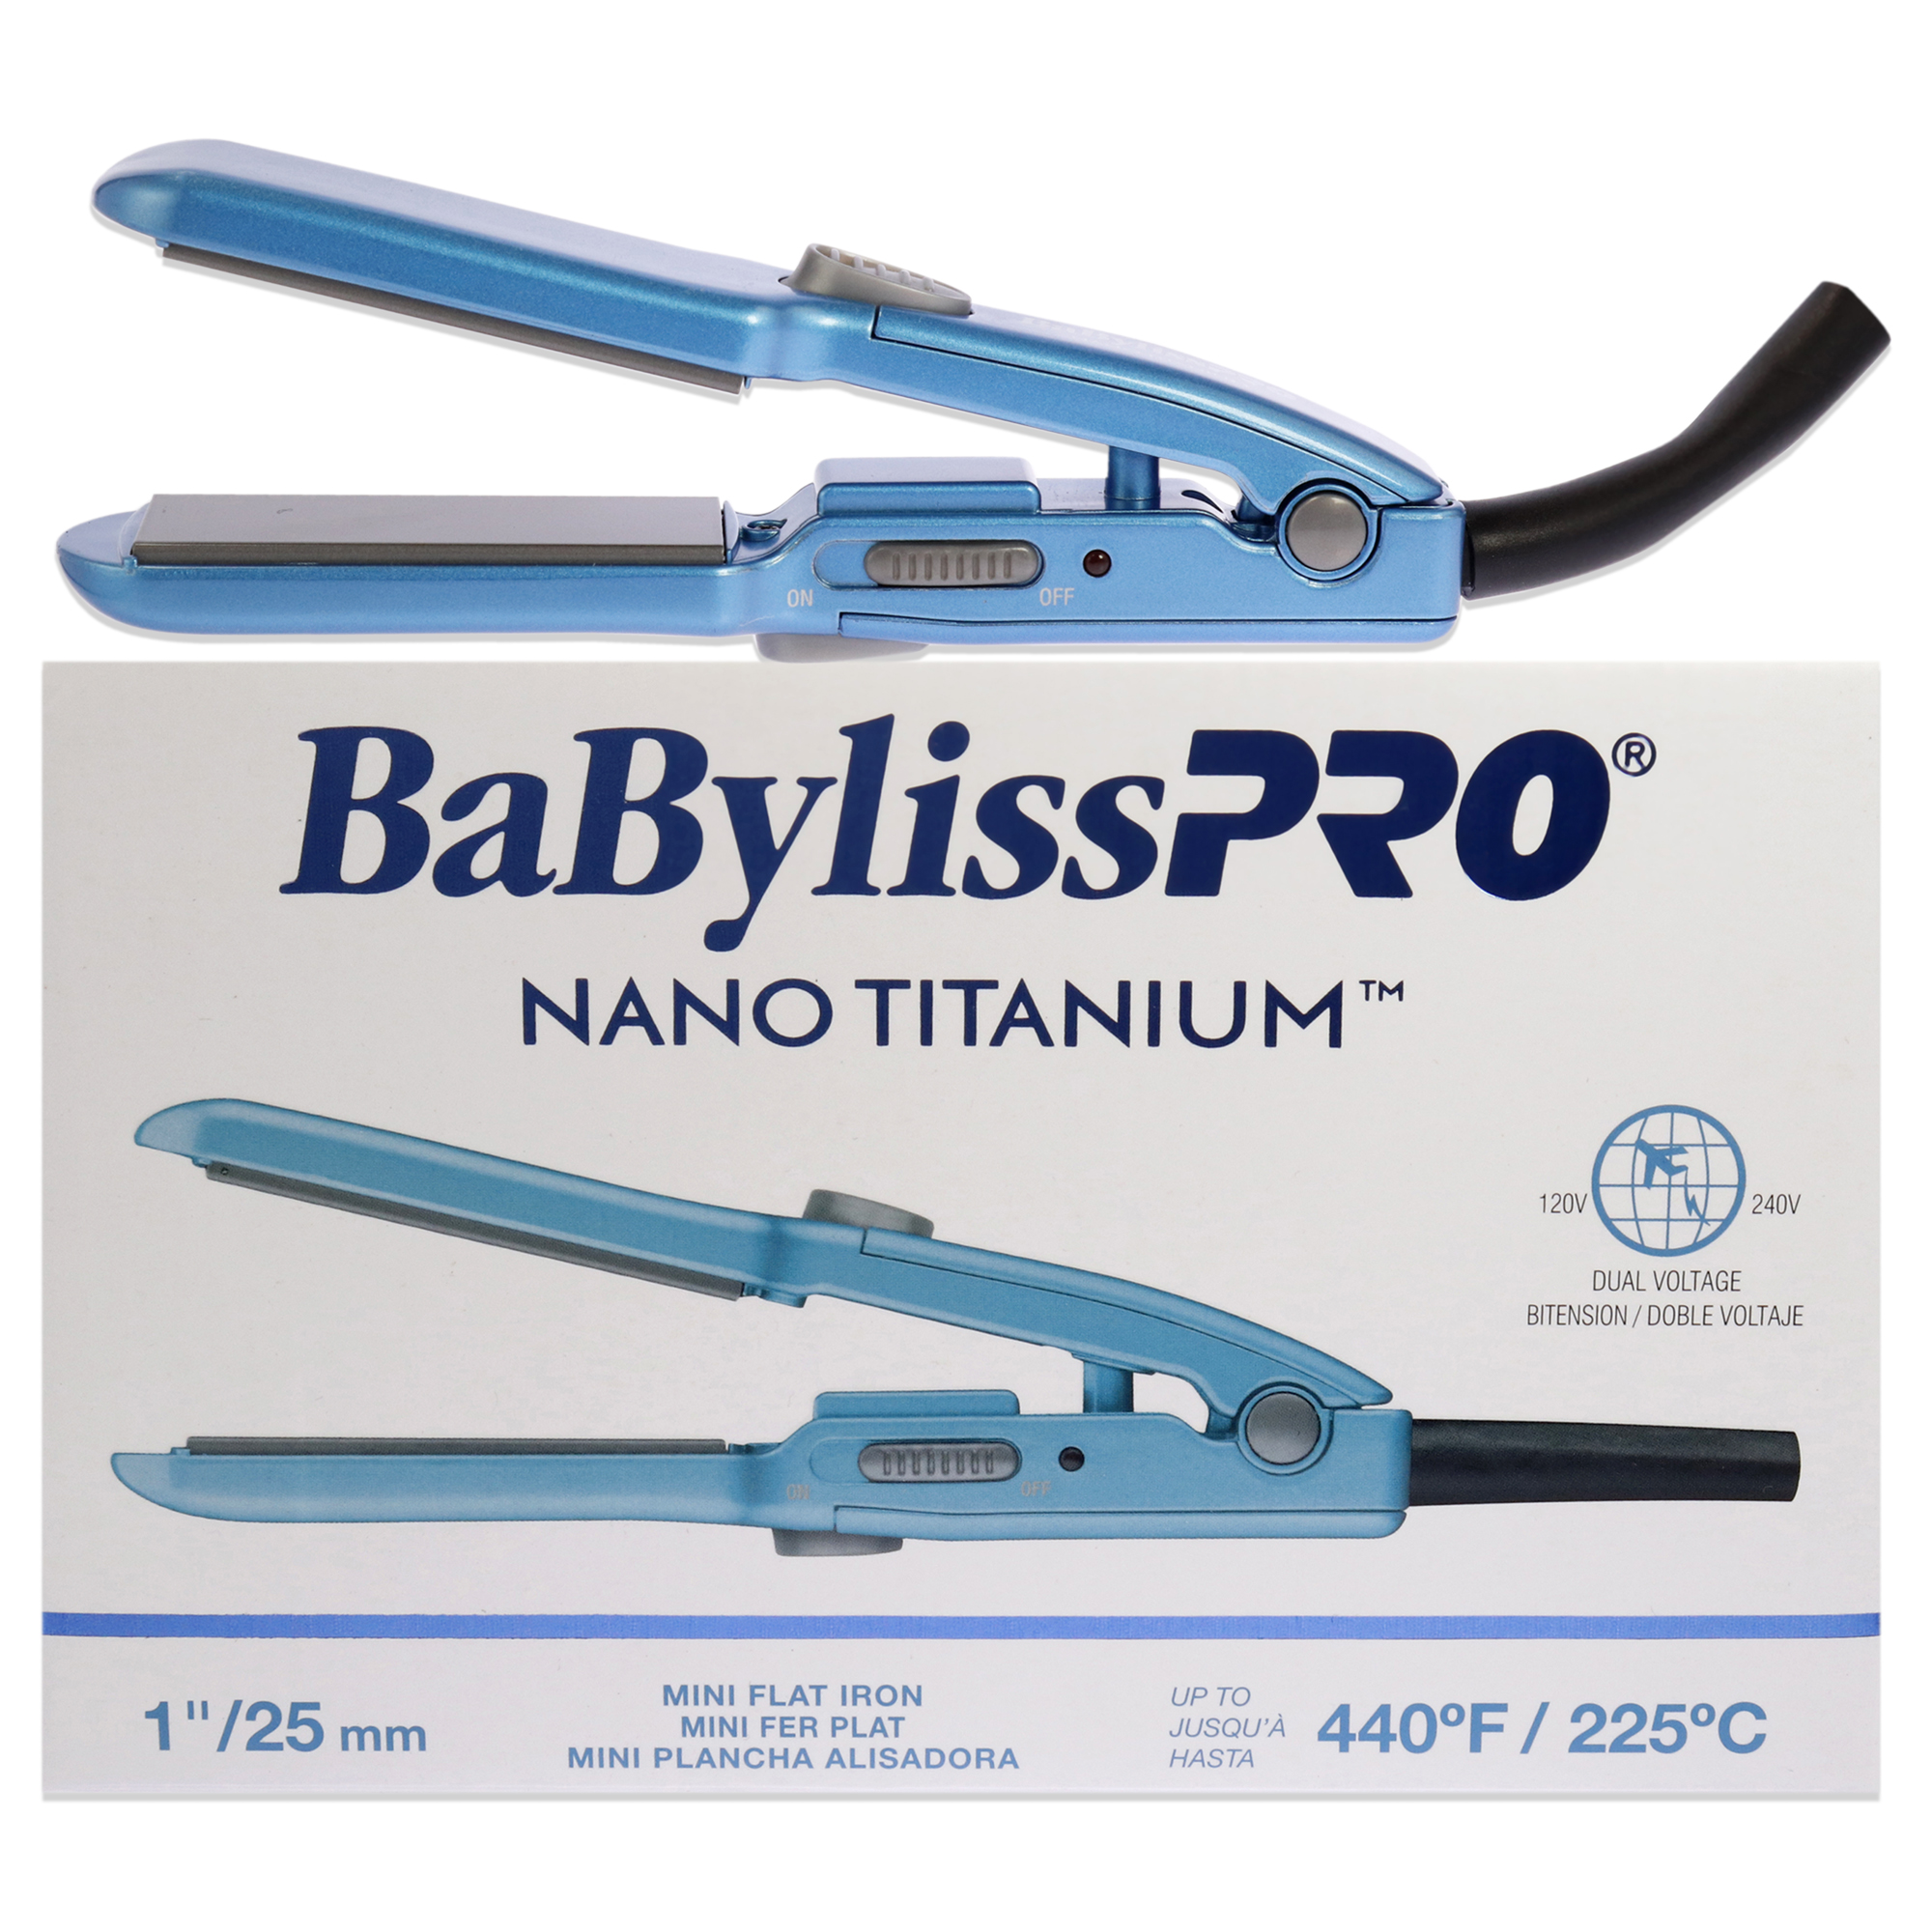 BaBylissPRO Nano Titanium Mini Flat Iron - BNT3053UC - Blue, 1 Inch Flat Iron - image 1 of 4